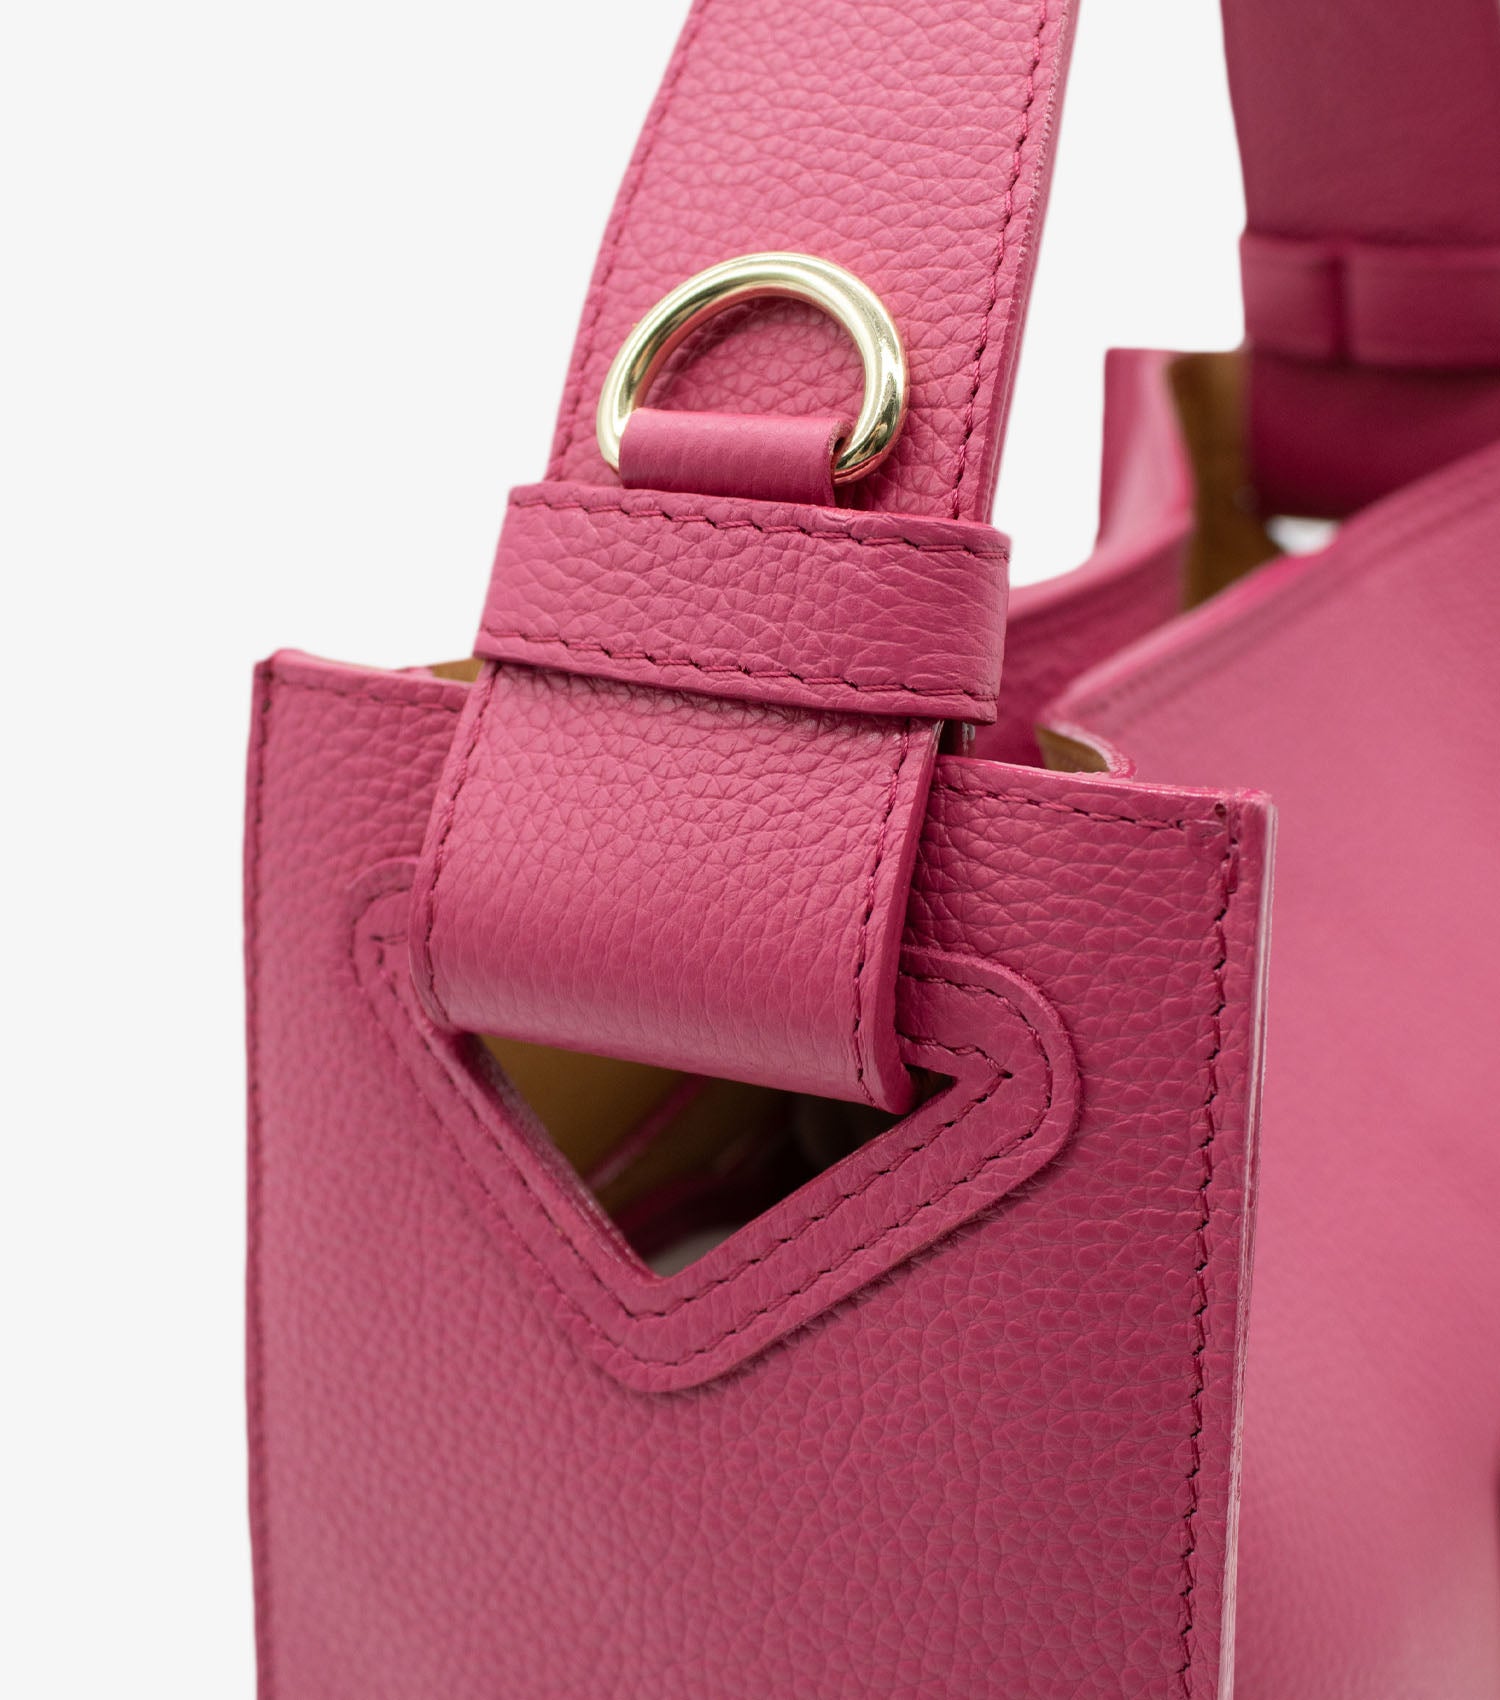 Cavalinho Muse Leather Handbag - HotPink - 18300475.18_P05